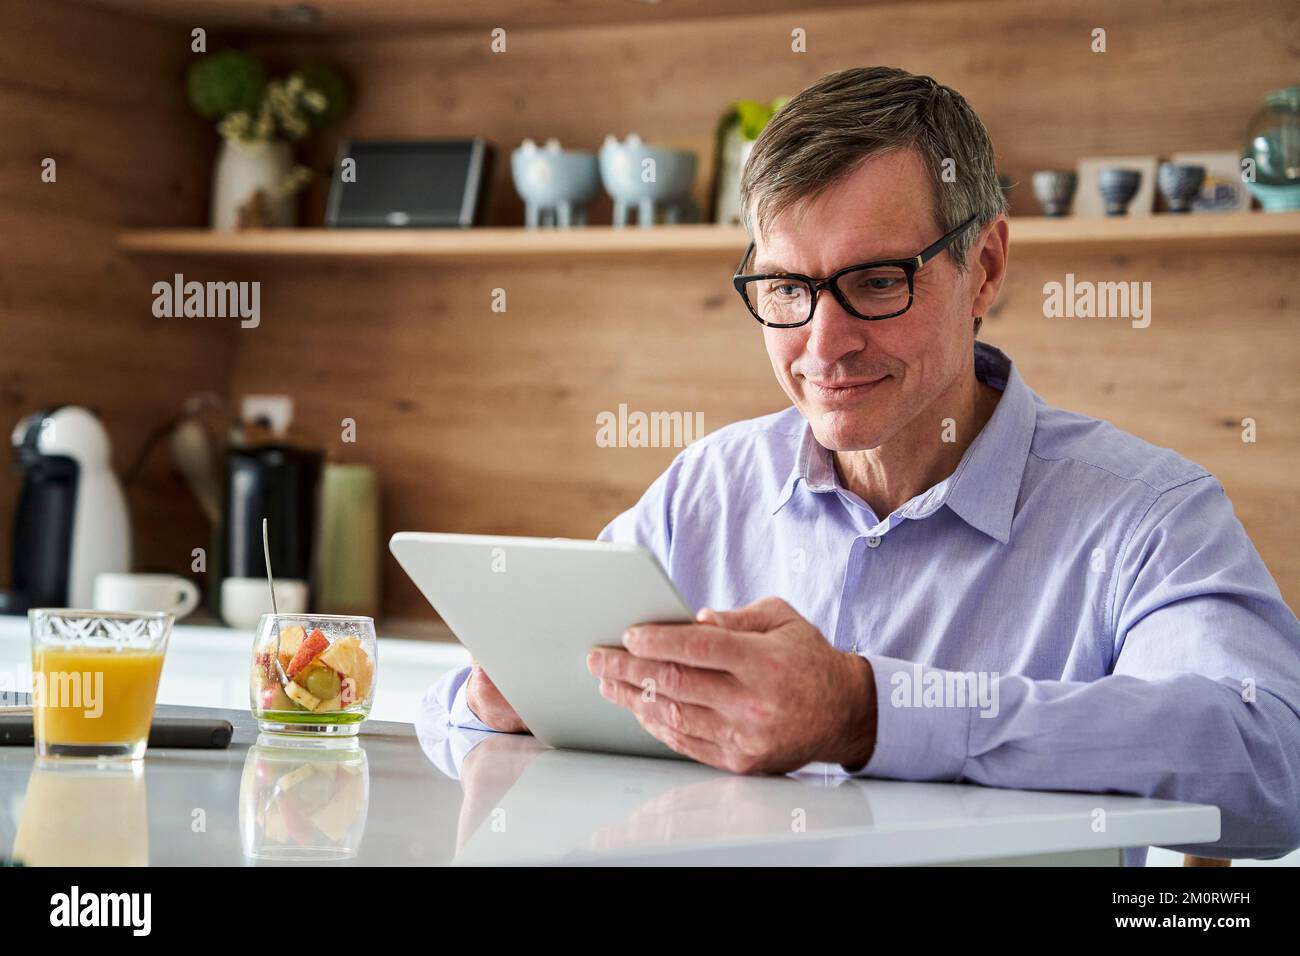 Professioneller Mann mittleren Alters, der lächelt und Nachrichten auf einem digitalen Tablet liest, während er zu Hause auf der Küchentheke frühstückt Stockfoto